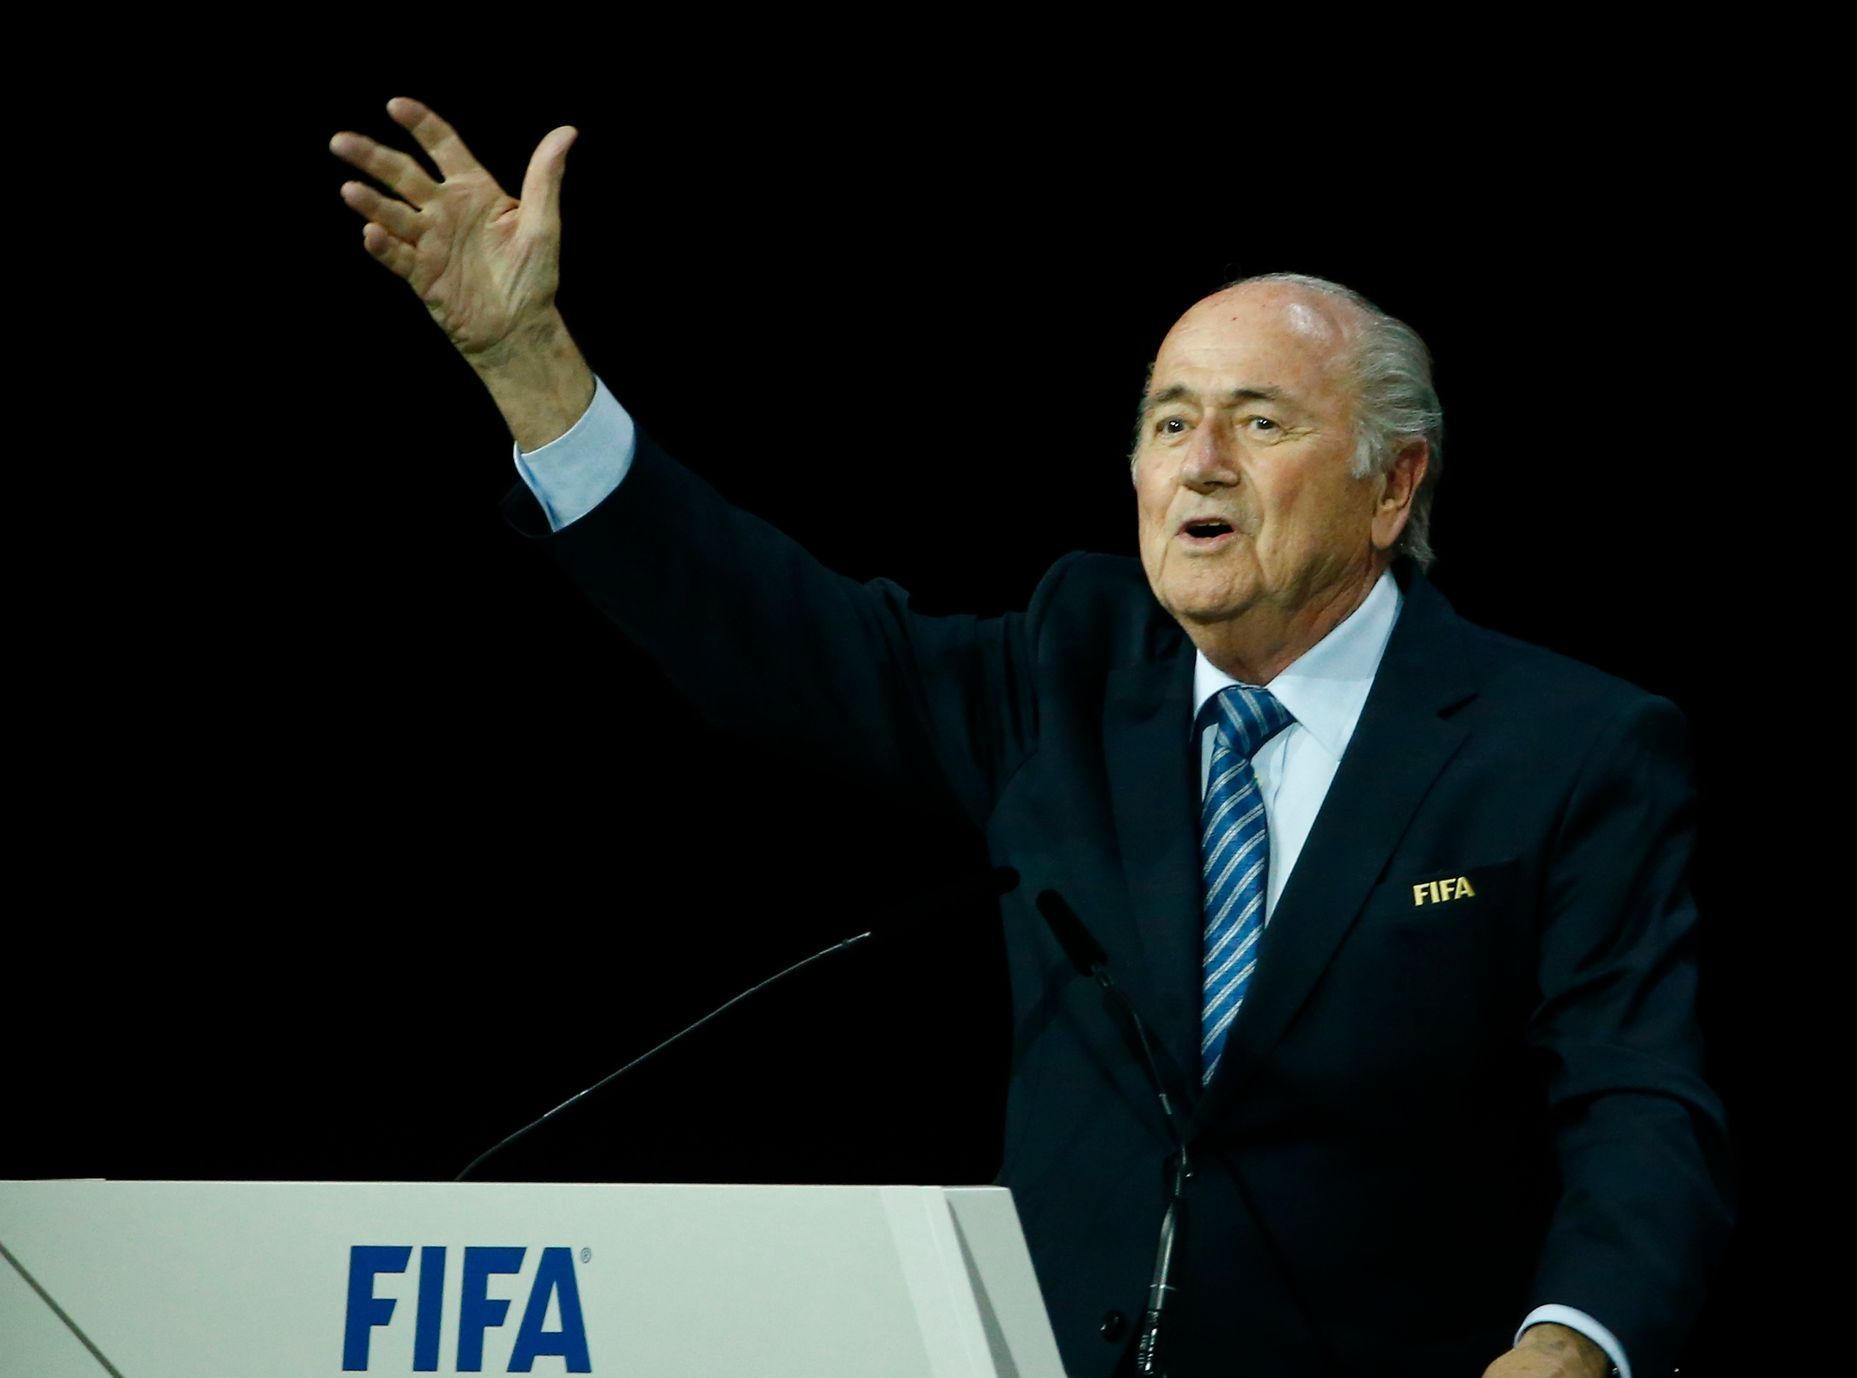 Volba prezidenta FIFA 2015